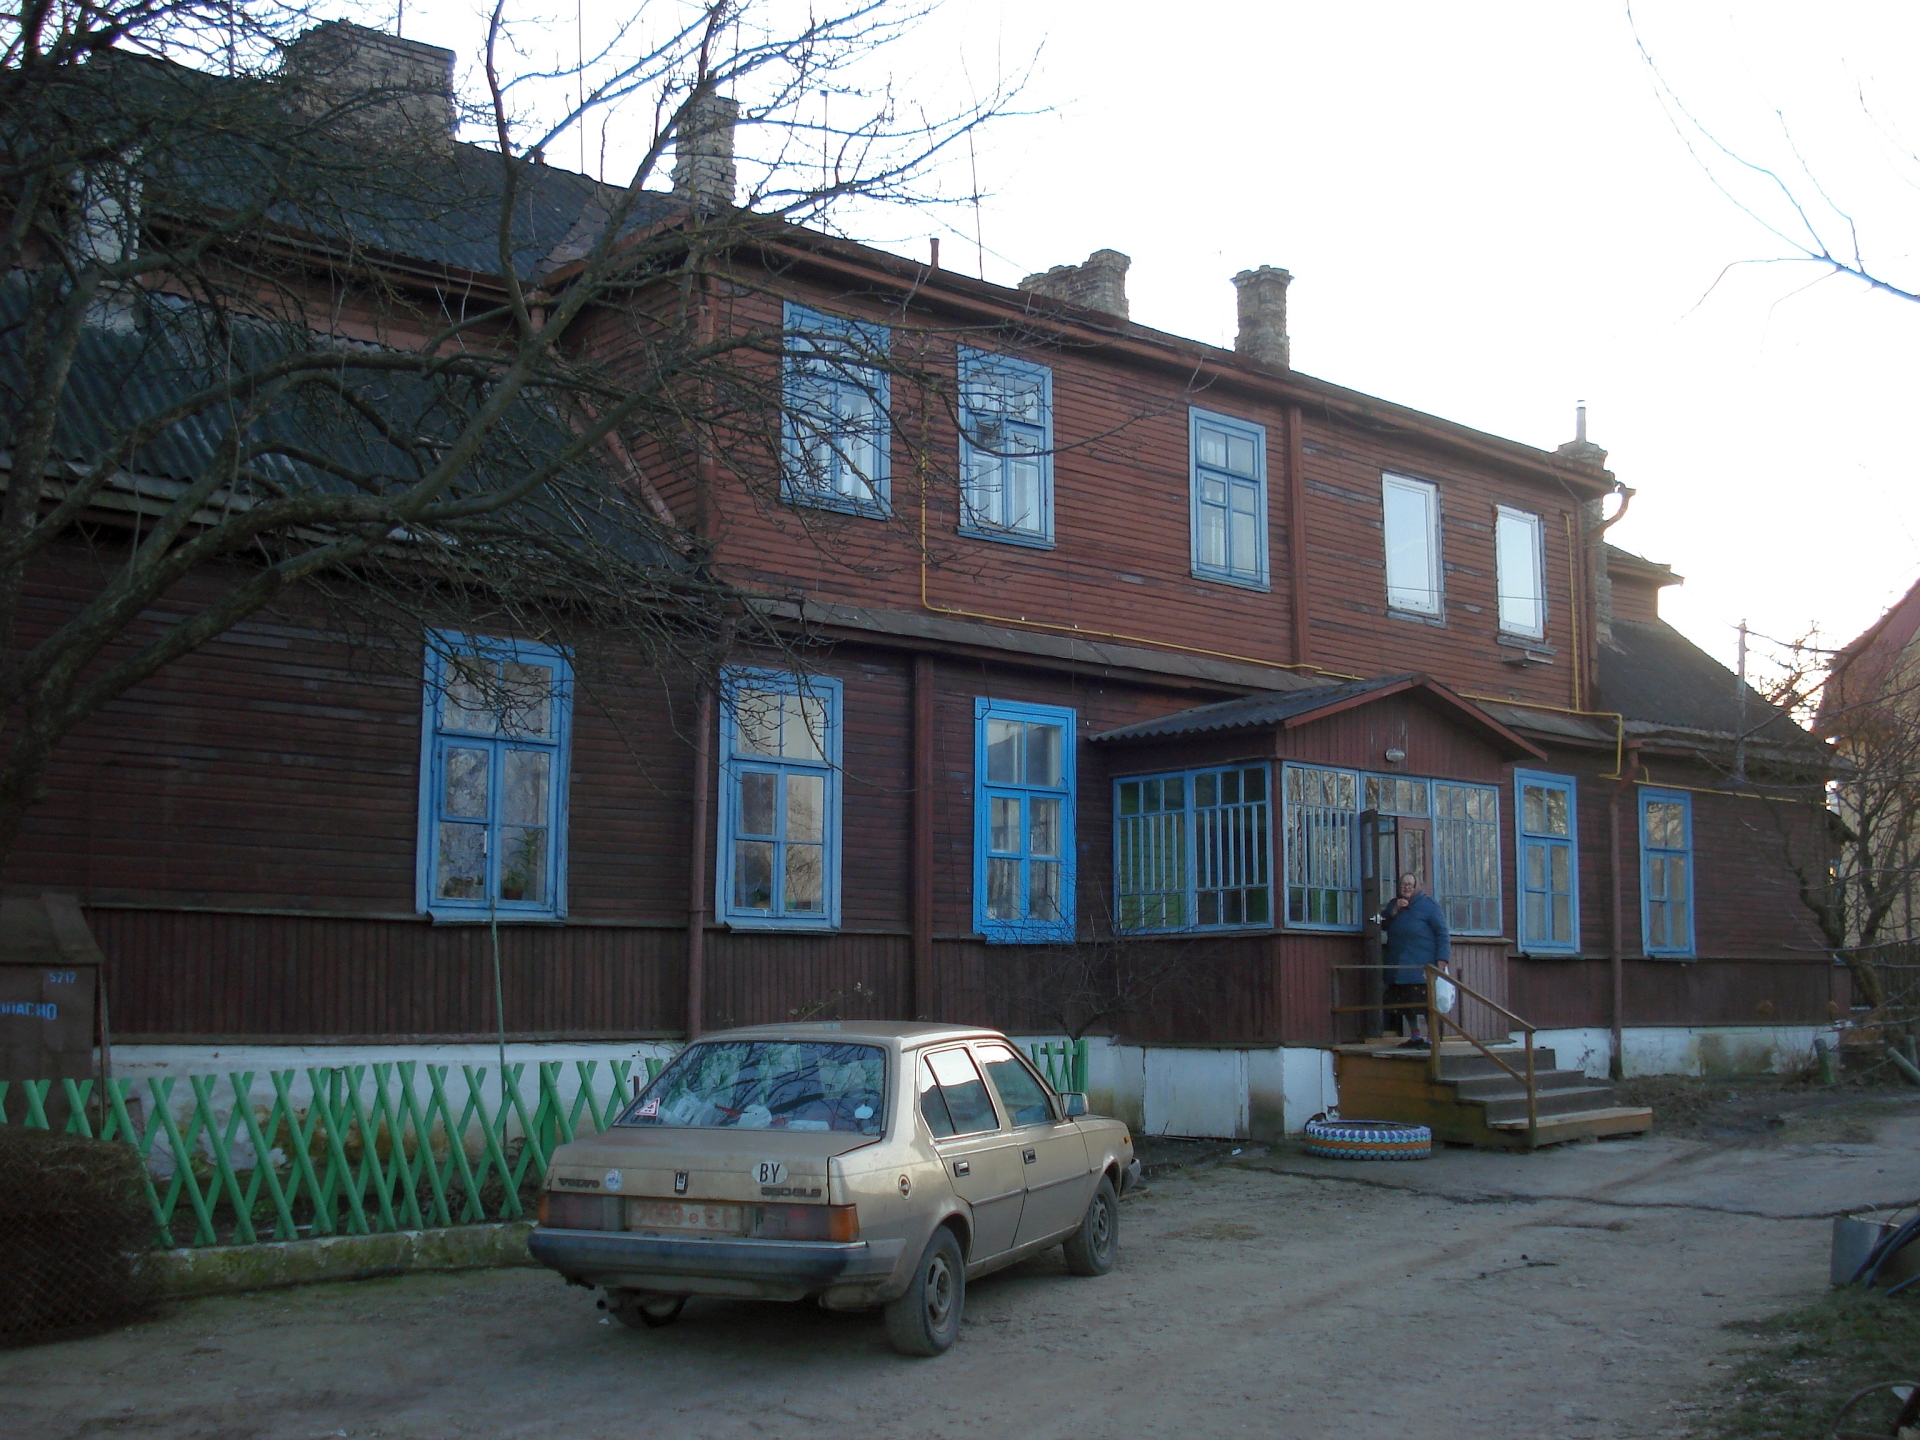 Дом 34 пер.Железнодорожный,  2008 г. Фото из личного архива